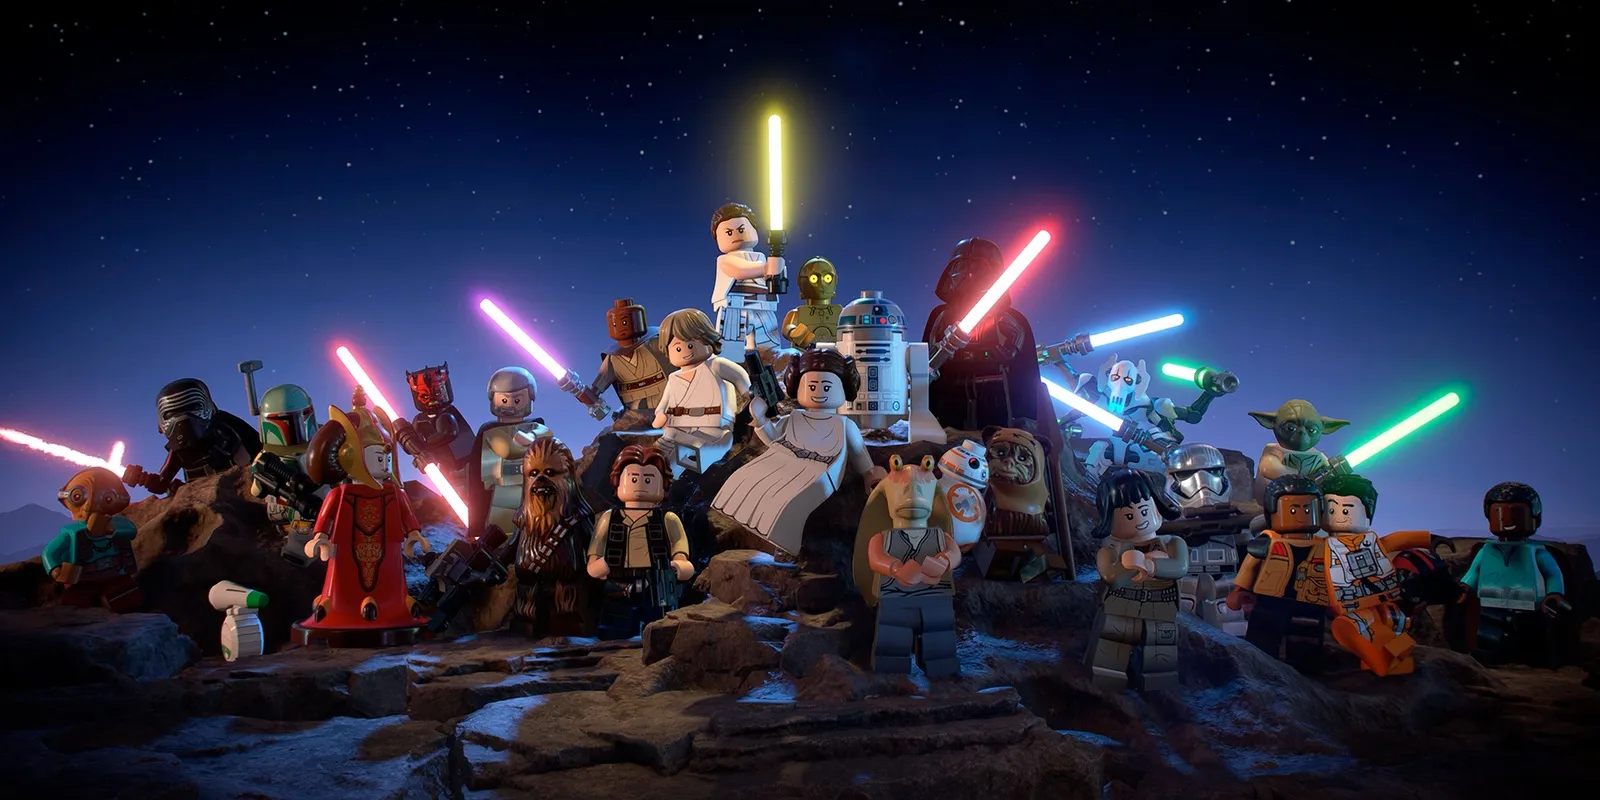 Plusieurs personnages de la franchise Star Wars en version Lego se tiennent ensemble sur une colline rocheuse avec le ciel nocturne derrière eux